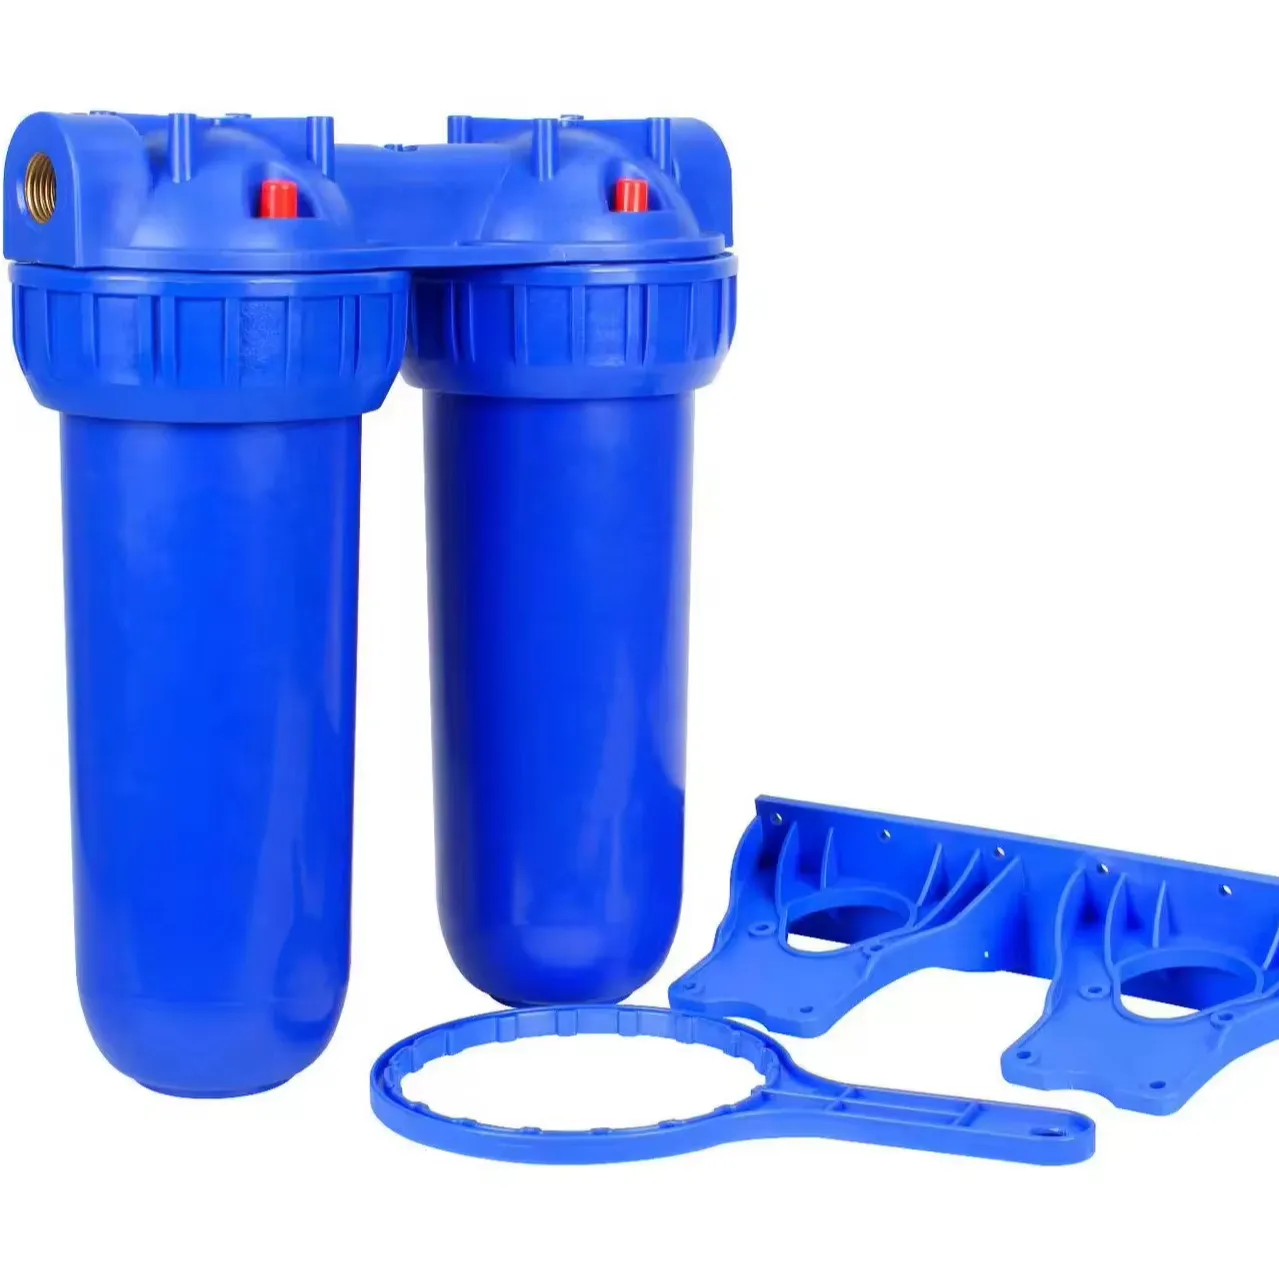 Purificador de água italiano europeu, garrafa pré-filtro dupla azul de 10 1/2 polegadas, purificador de água pré-filtro de 10 1/2 polegadas